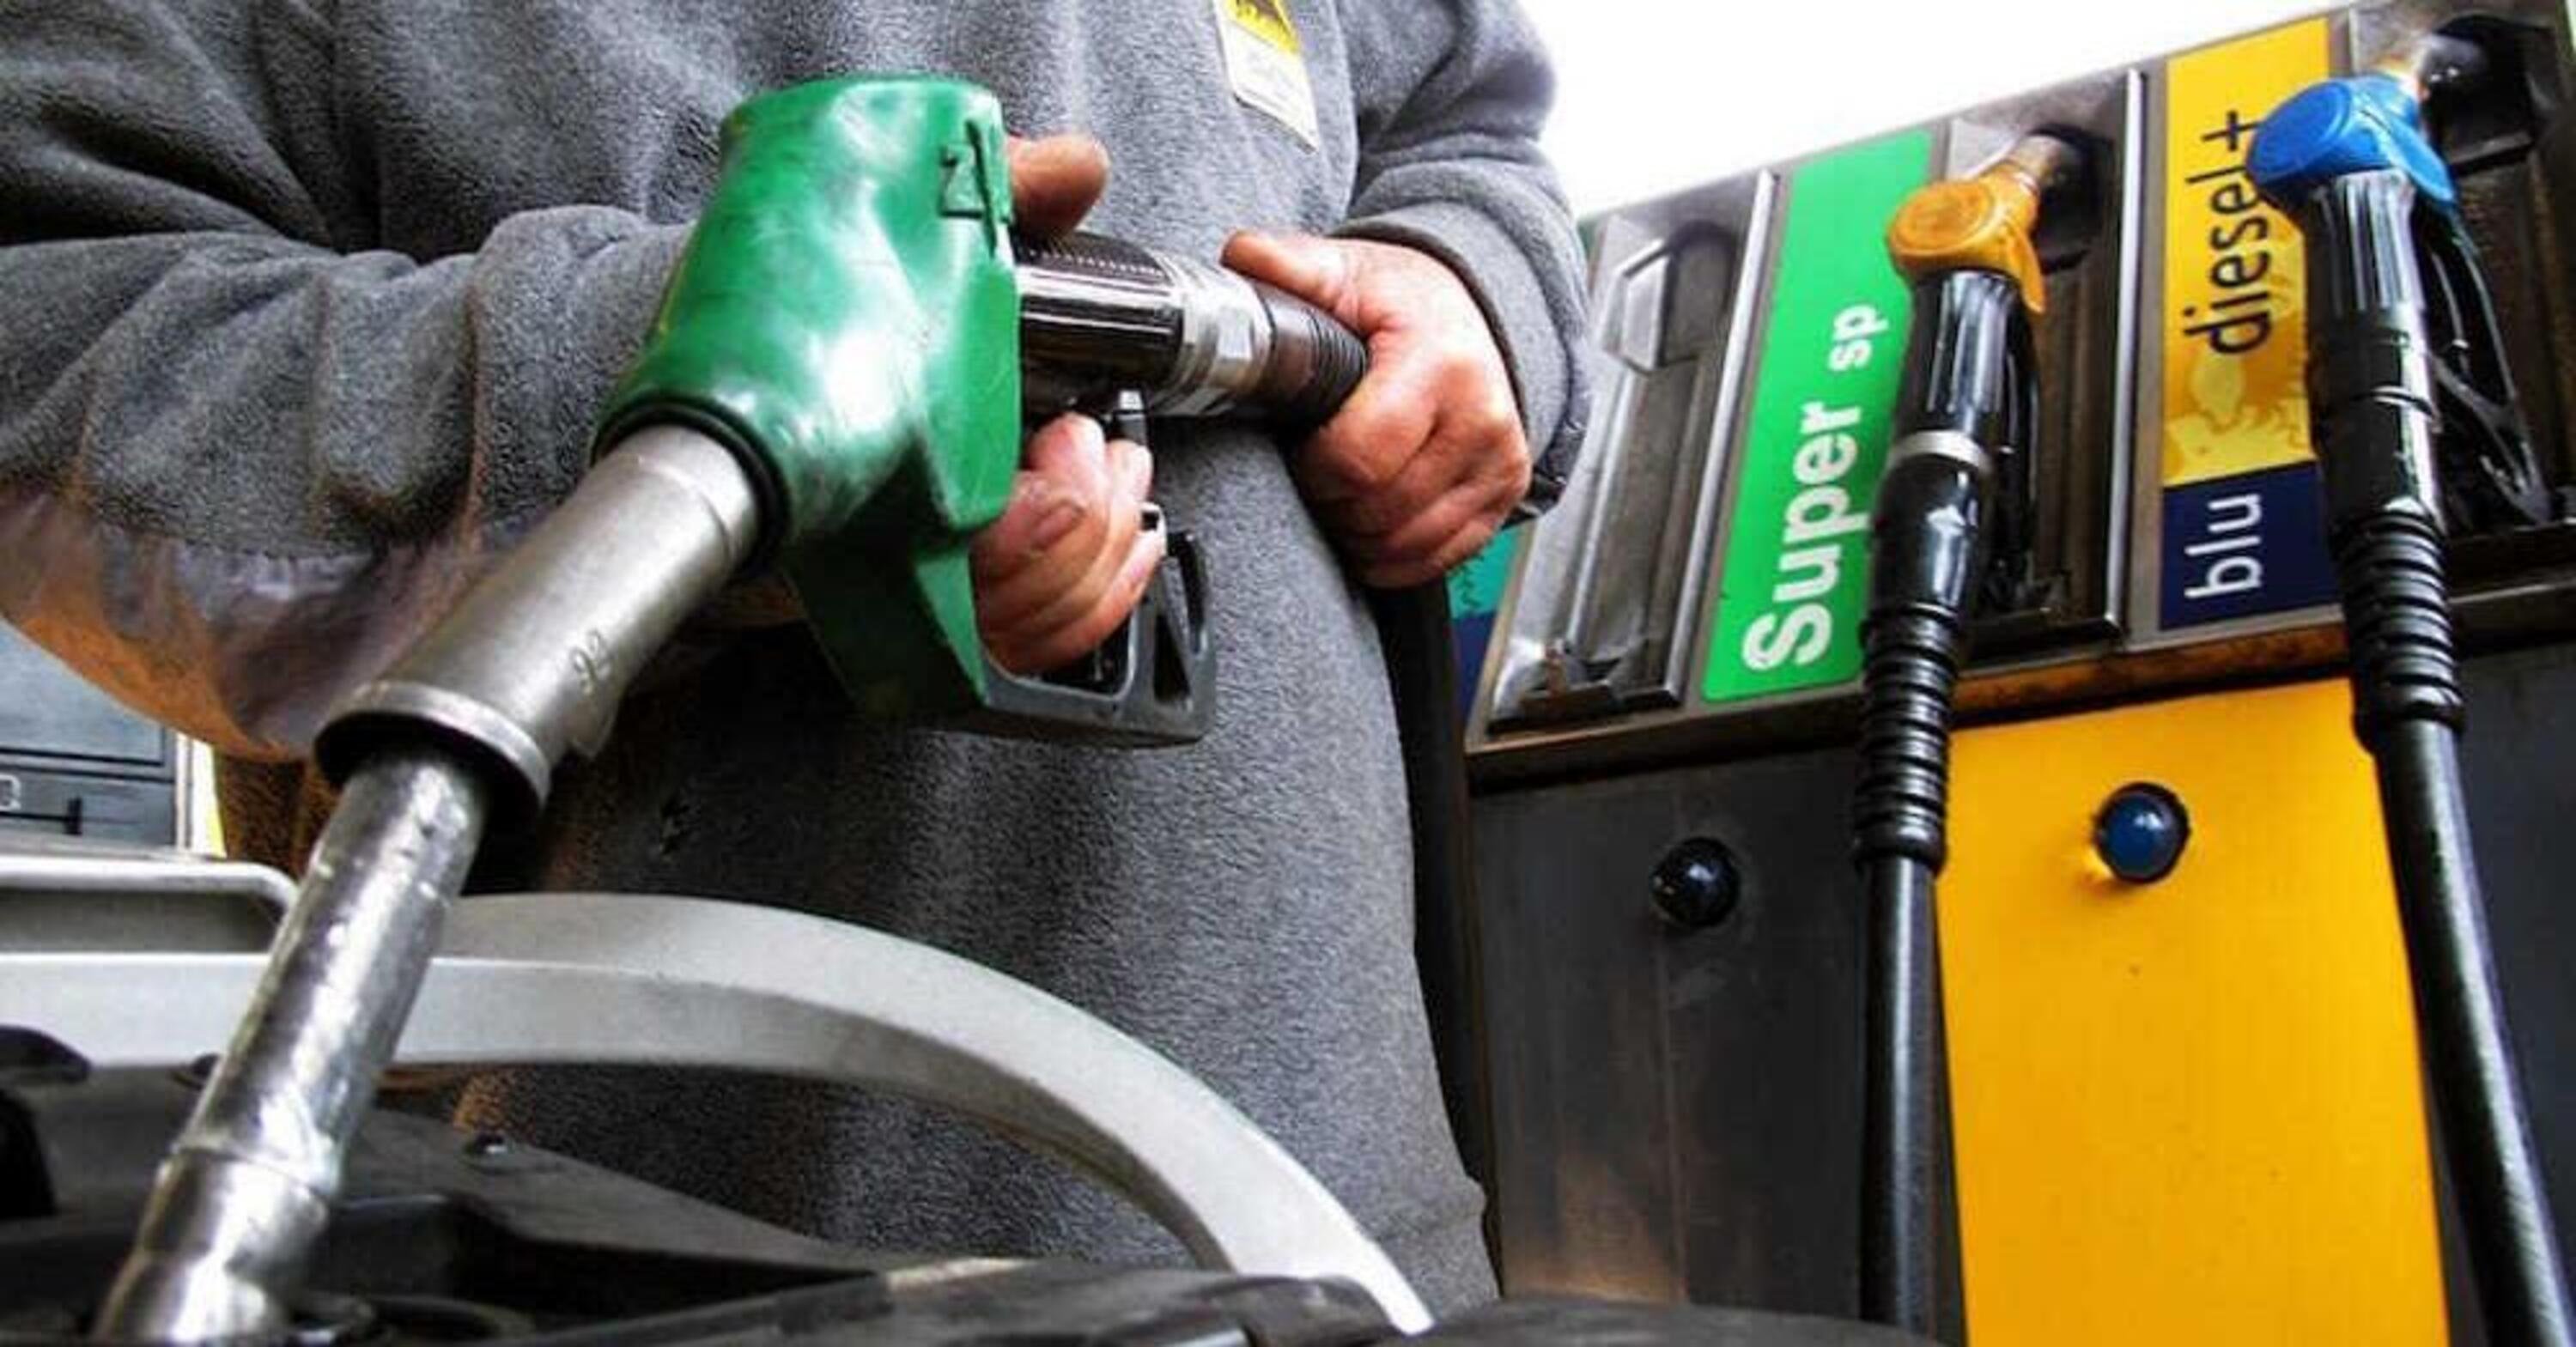 Se la benzina seguisse i rialzi del gas potrebbe superare i 3 euro al litro